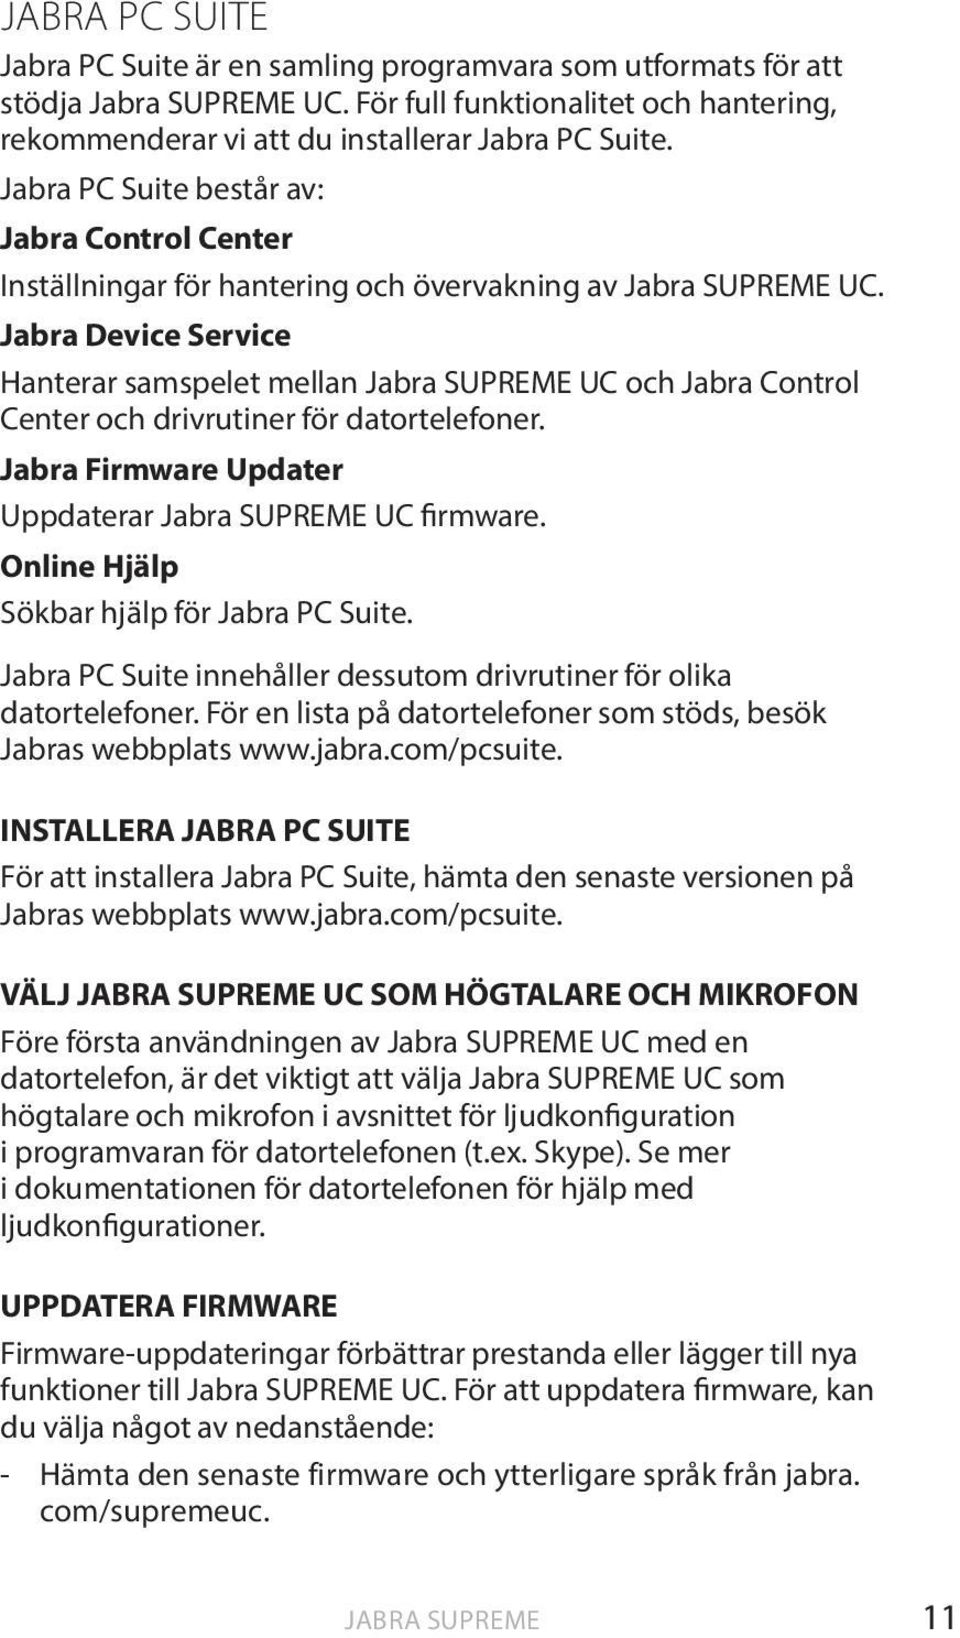 Jabra Device Service Hanterar samspelet mellan Jabra SUPREME UC och Jabra Control Center och drivrutiner för datortelefoner. Jabra Firmware Updater Uppdaterar Jabra SUPREME UC firmware.